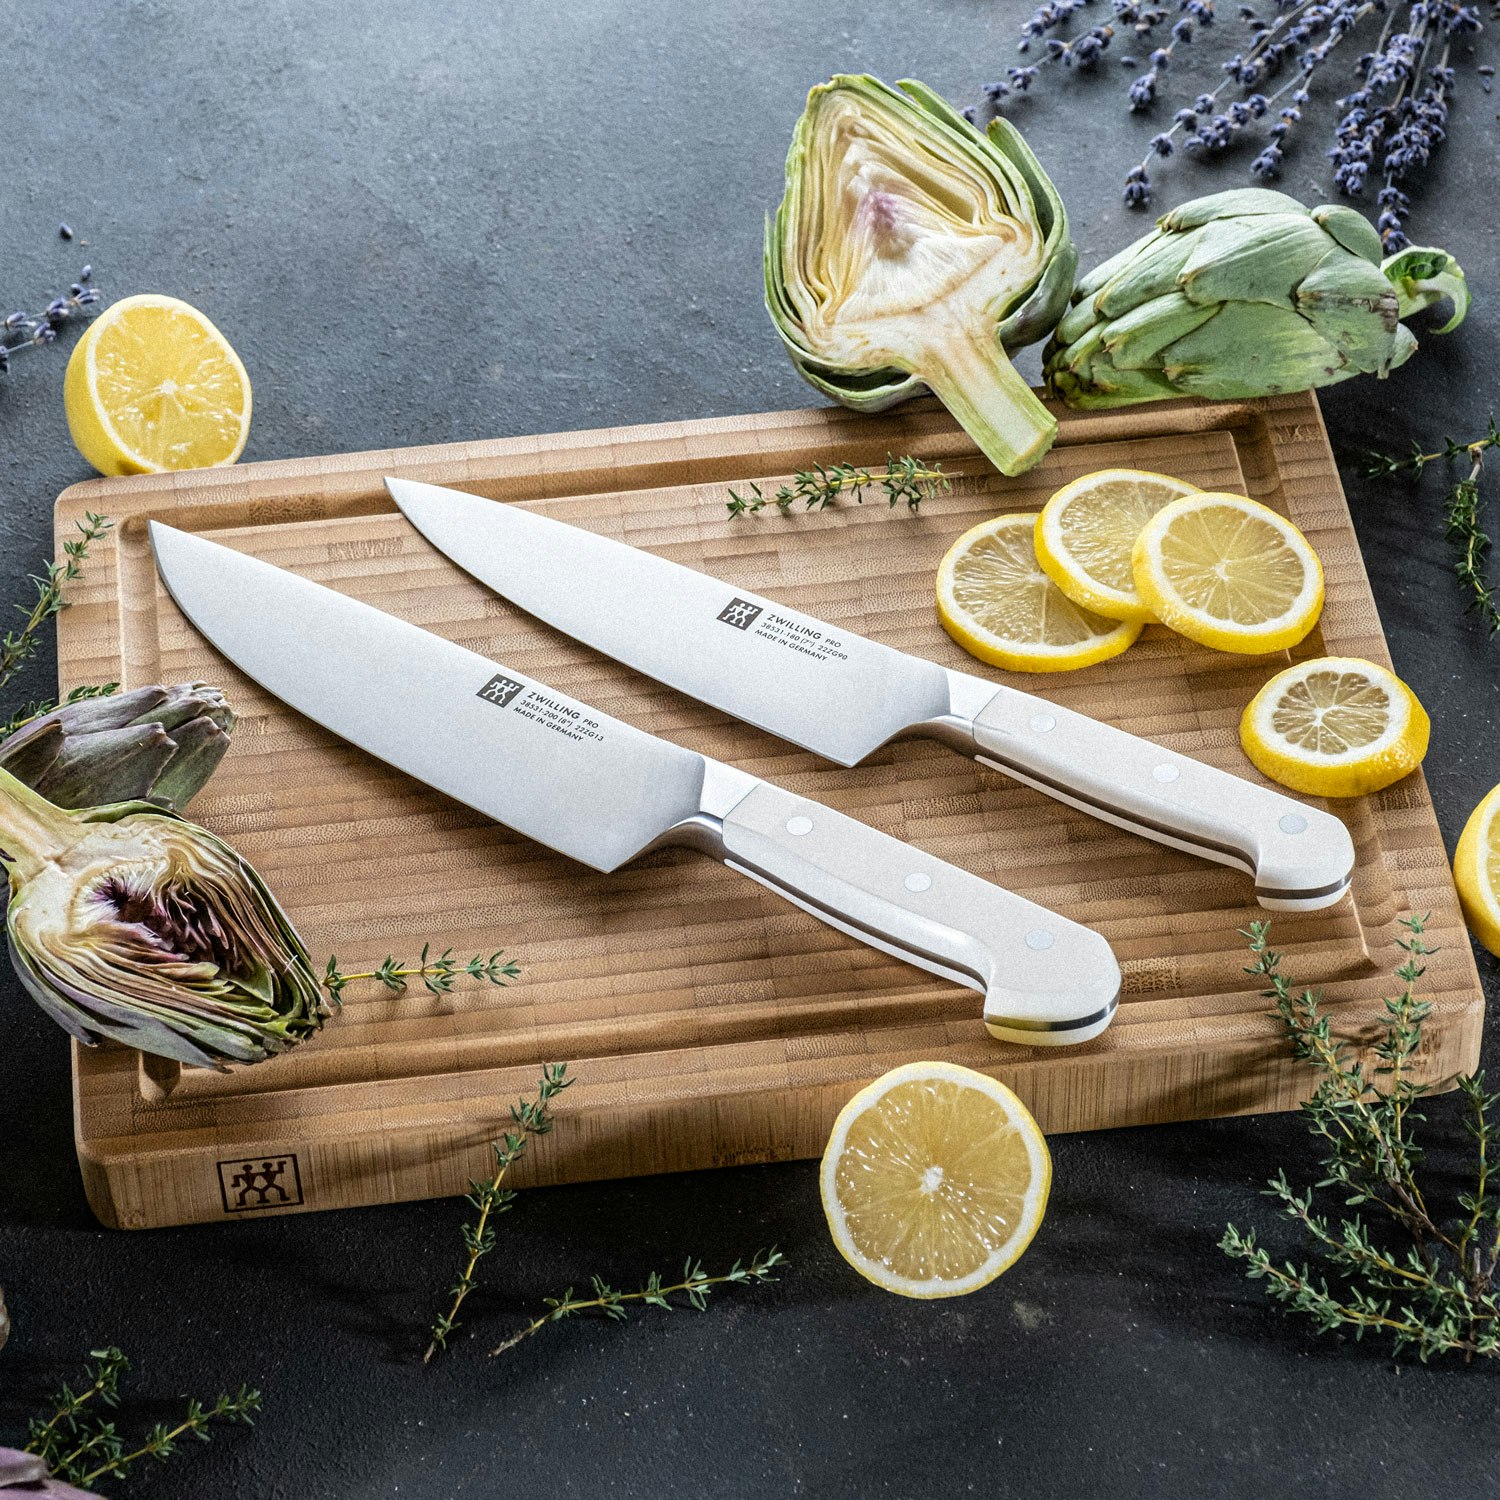 https://royaldesign.com/image/2/zwilling-pro-le-blanc-chef-knife-20-cm-1